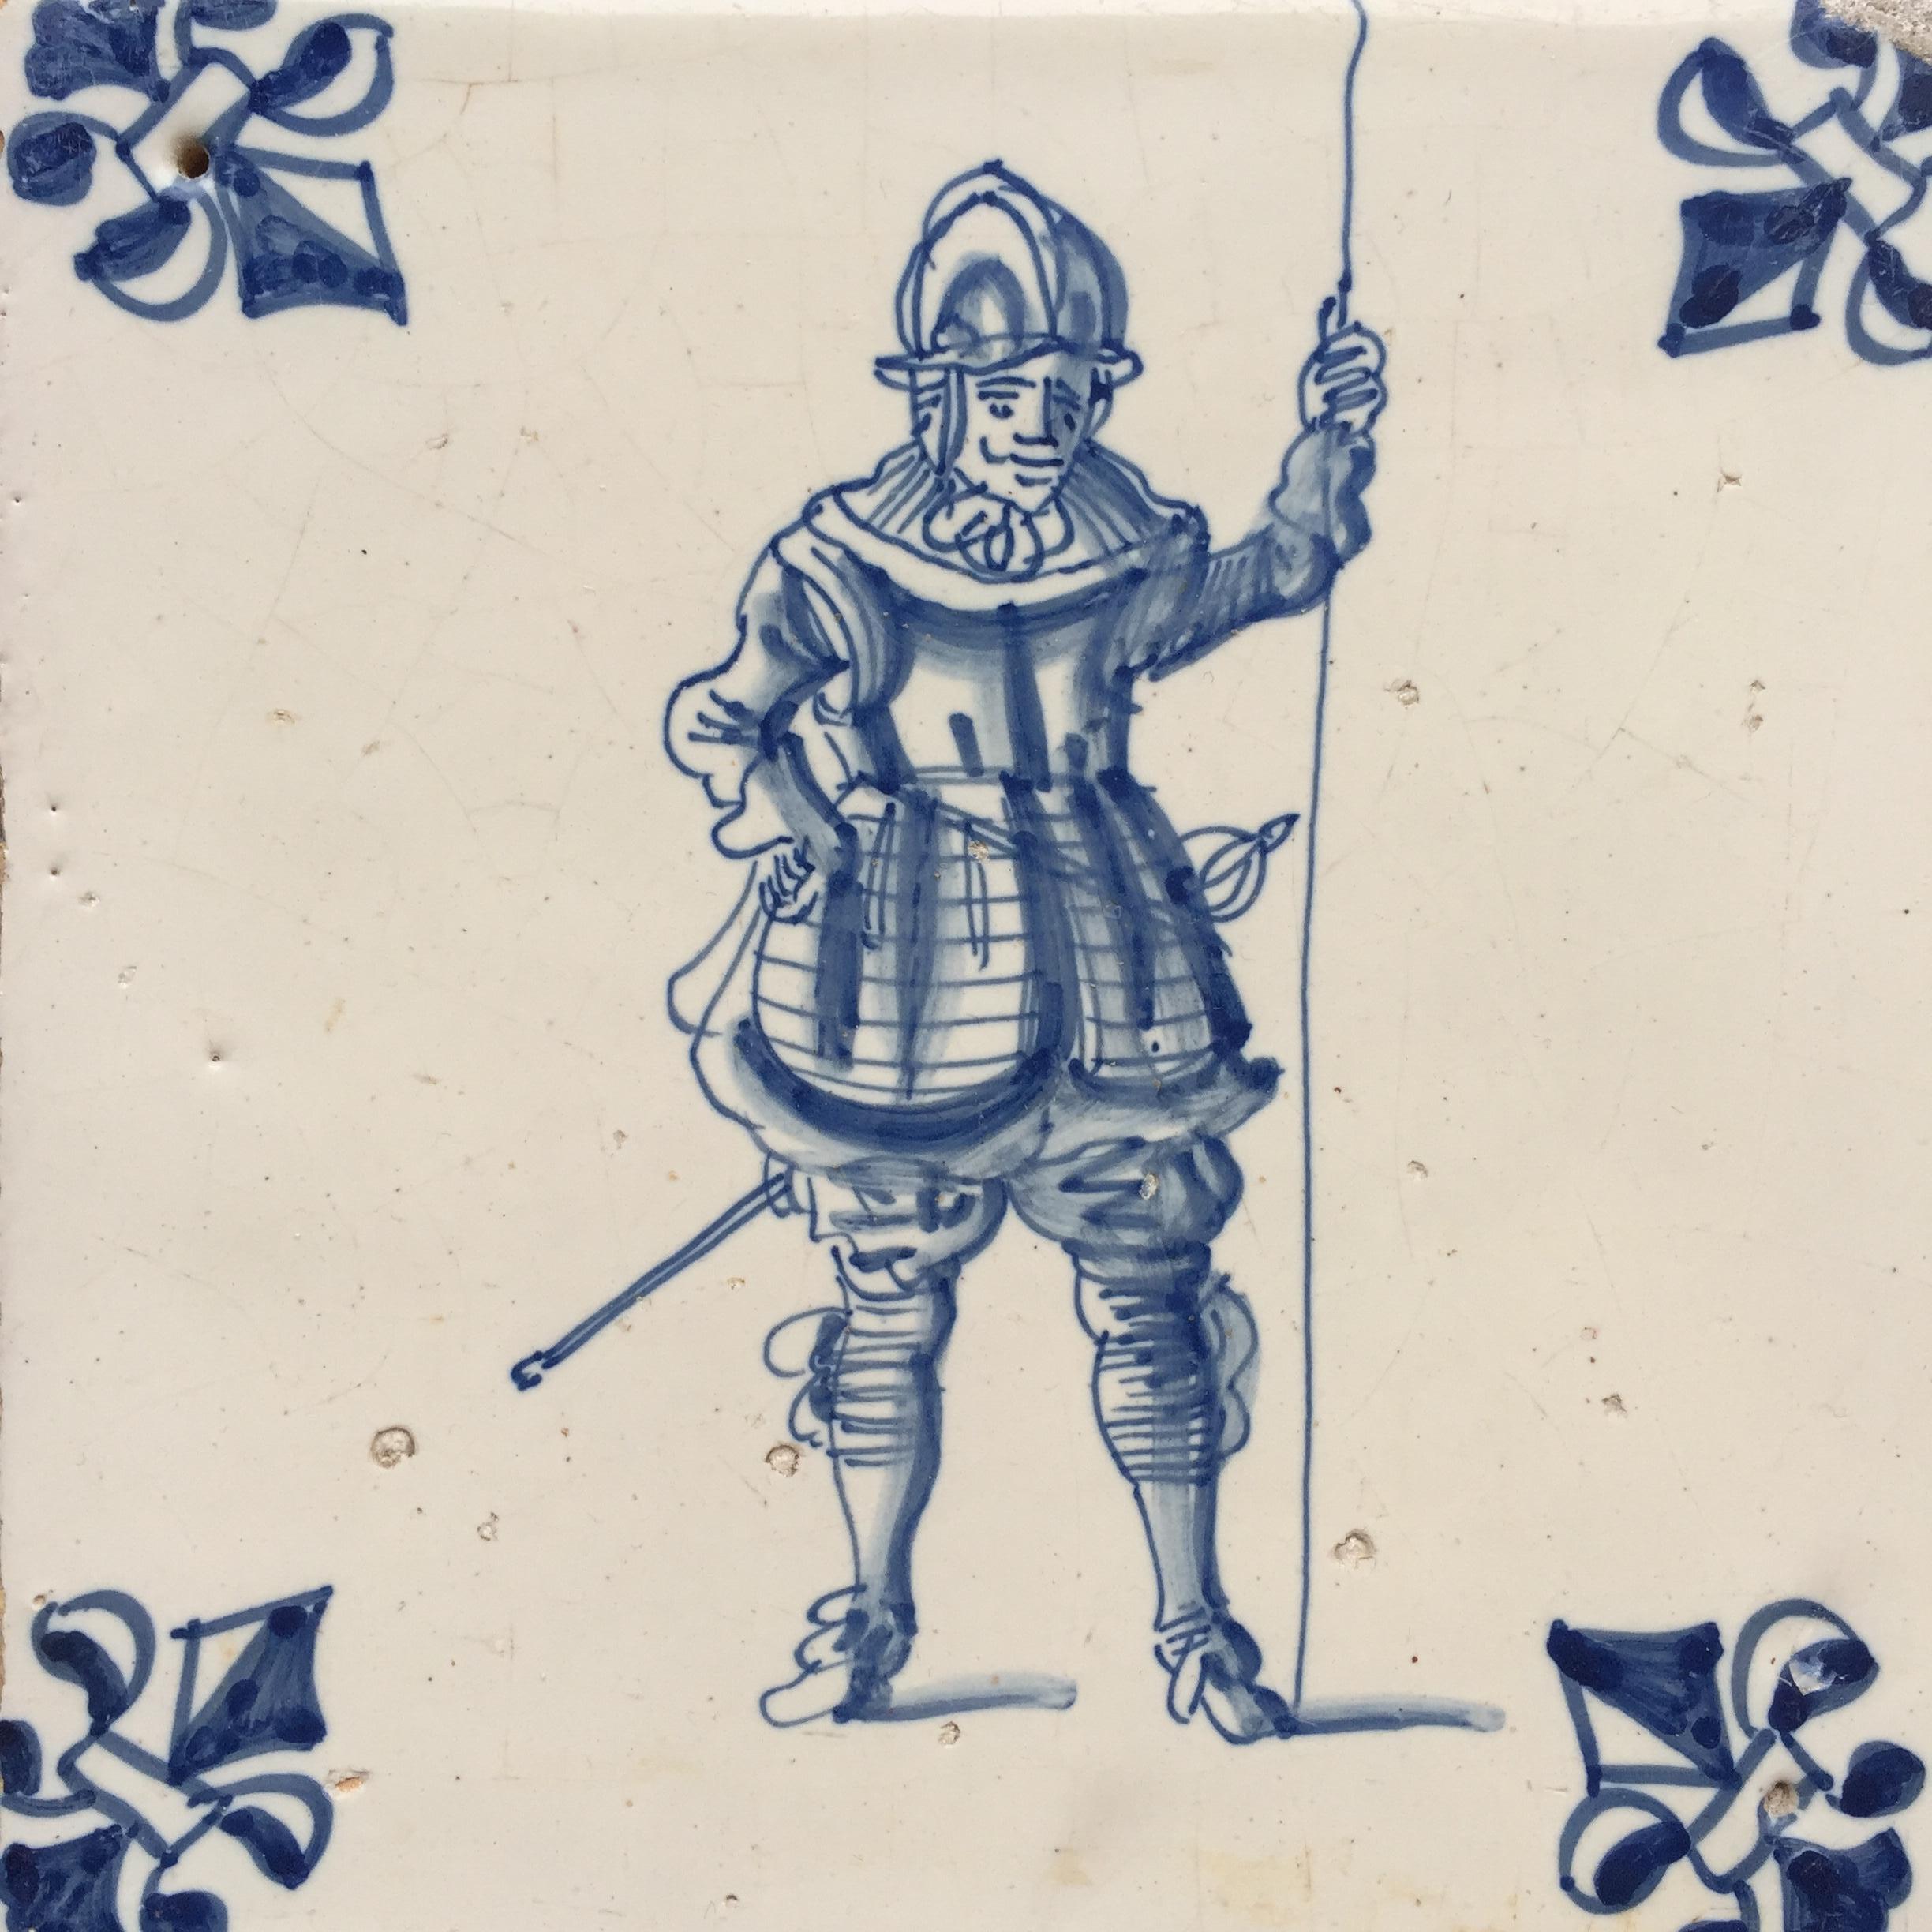 Les Pays-Bas
Amsterdam
Circa 1625 - 1650

Un carreau hollandais bleu et blanc avec une décoration d'un soldat hollandais ou espagnol de la période de la guerre de 80 ans.
La décoration de cette tuile est très détaillée et nous pouvons magnifiquement